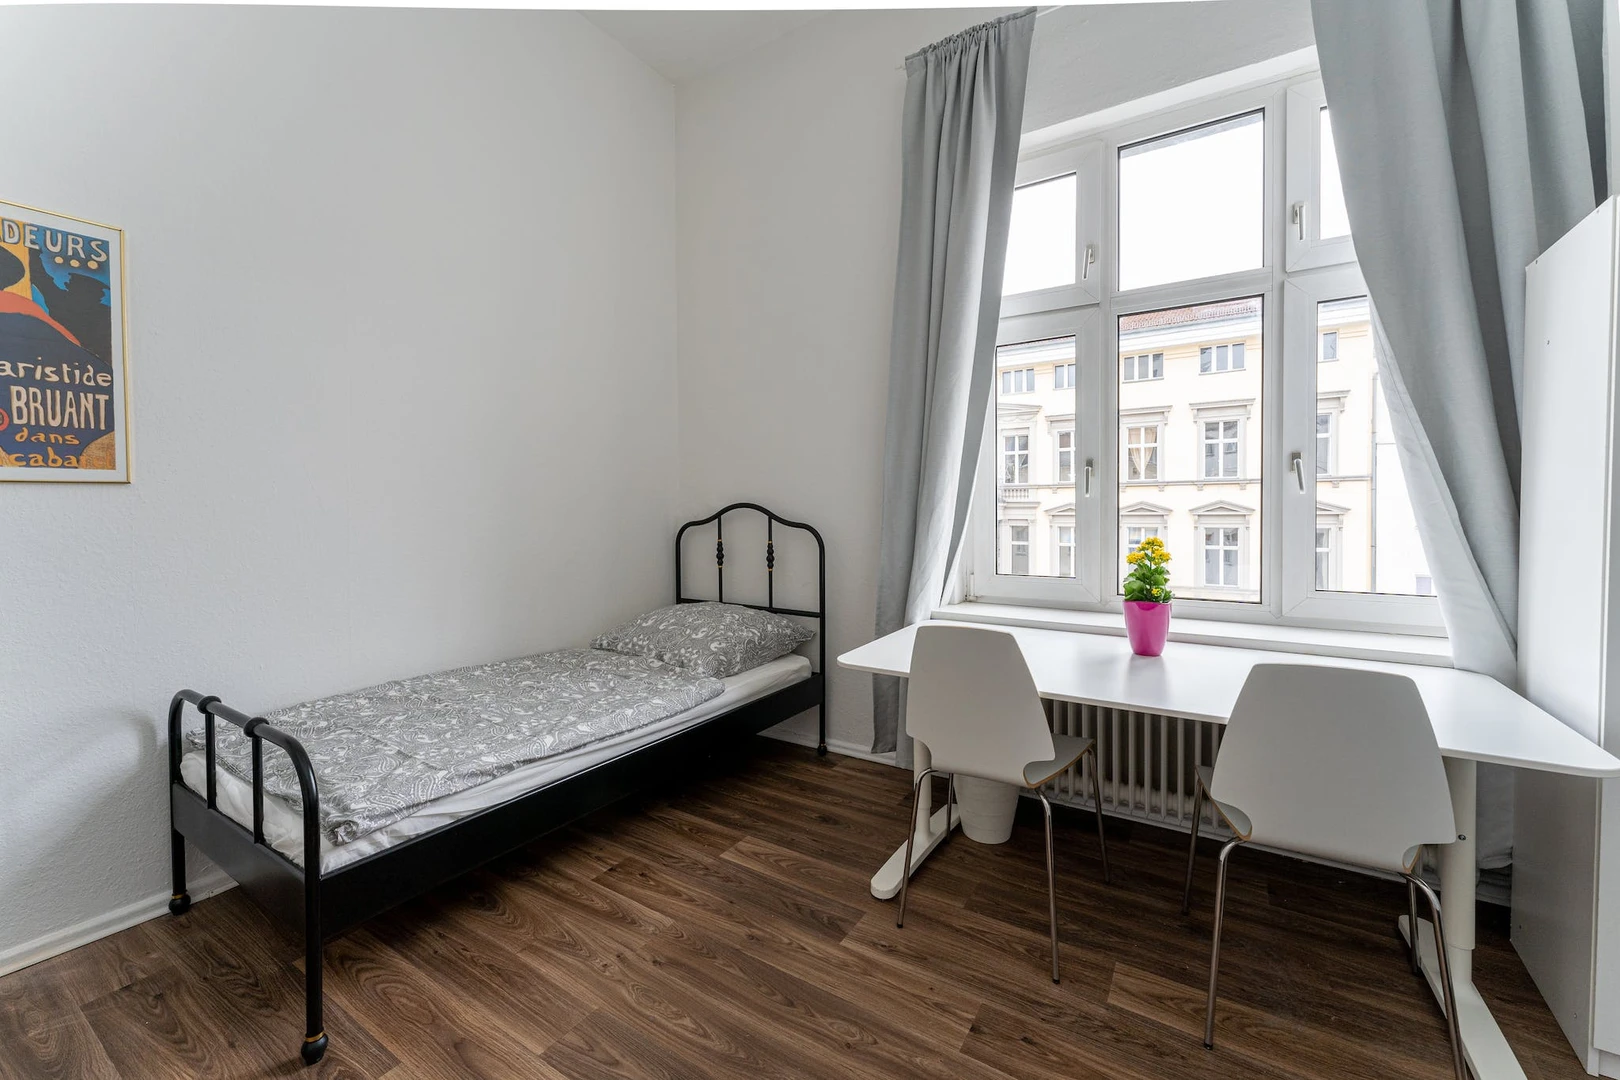 Habitación compartida barata en Berlín